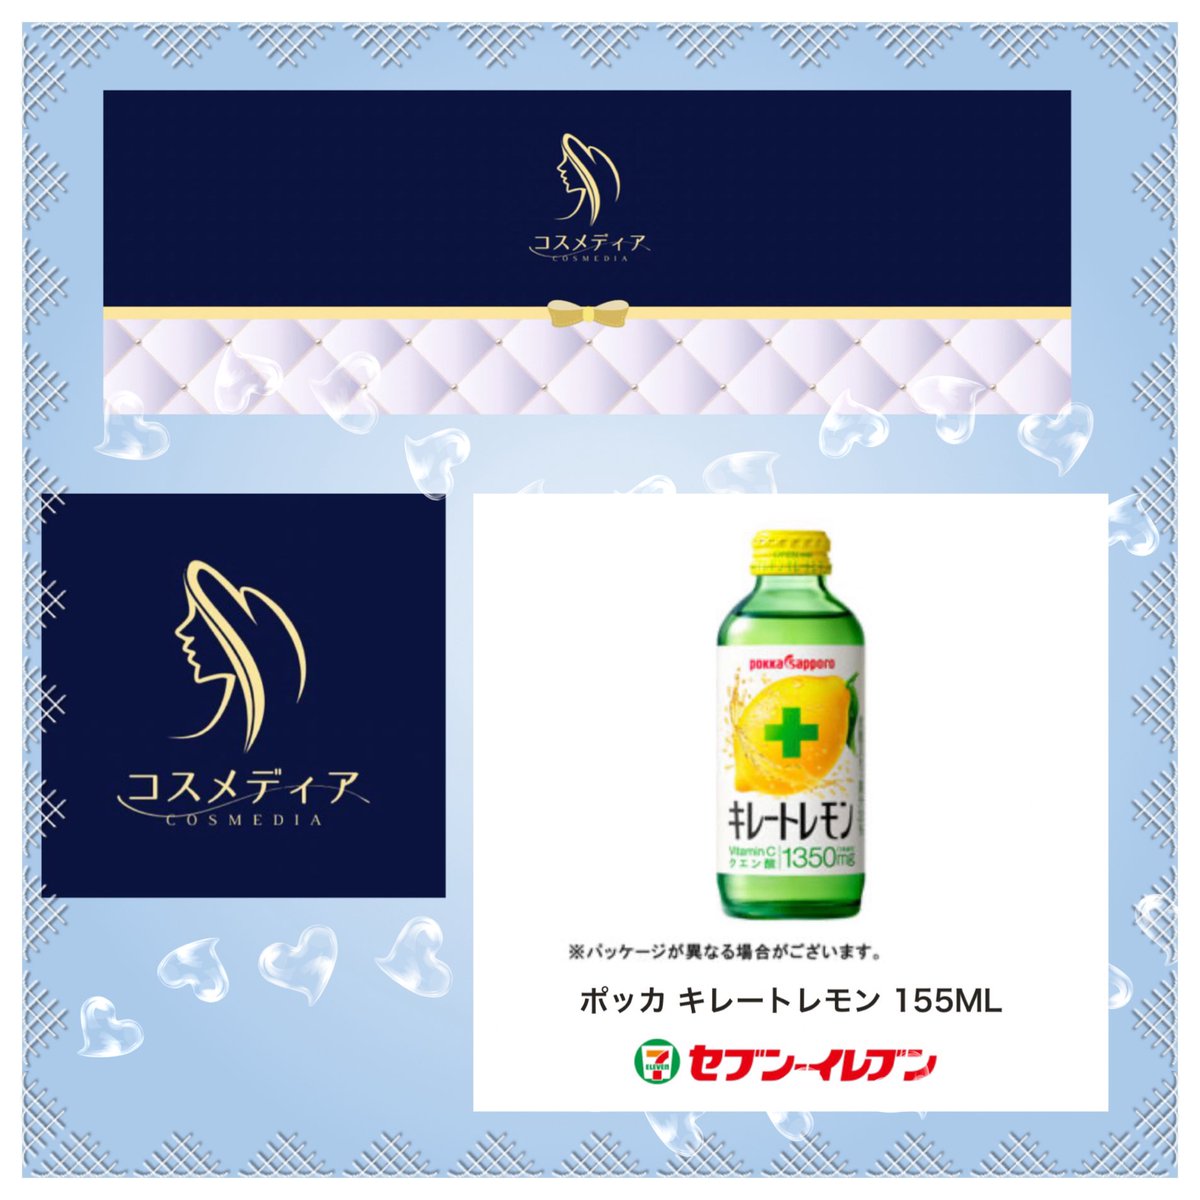 Cosmedia(コスメディア)公式さま (@offer_jp ) プレゼントキャンペーンにて ポッカキレートレモン155MLが 当選しました✨ 誠にありがとうございます😊 ビタミンC補給させていただきます✨ コスメディア様は新しいキャンペーン 開催中ですのでぜひご参加ください✨ この度はありがとうございました🙇‍♀️